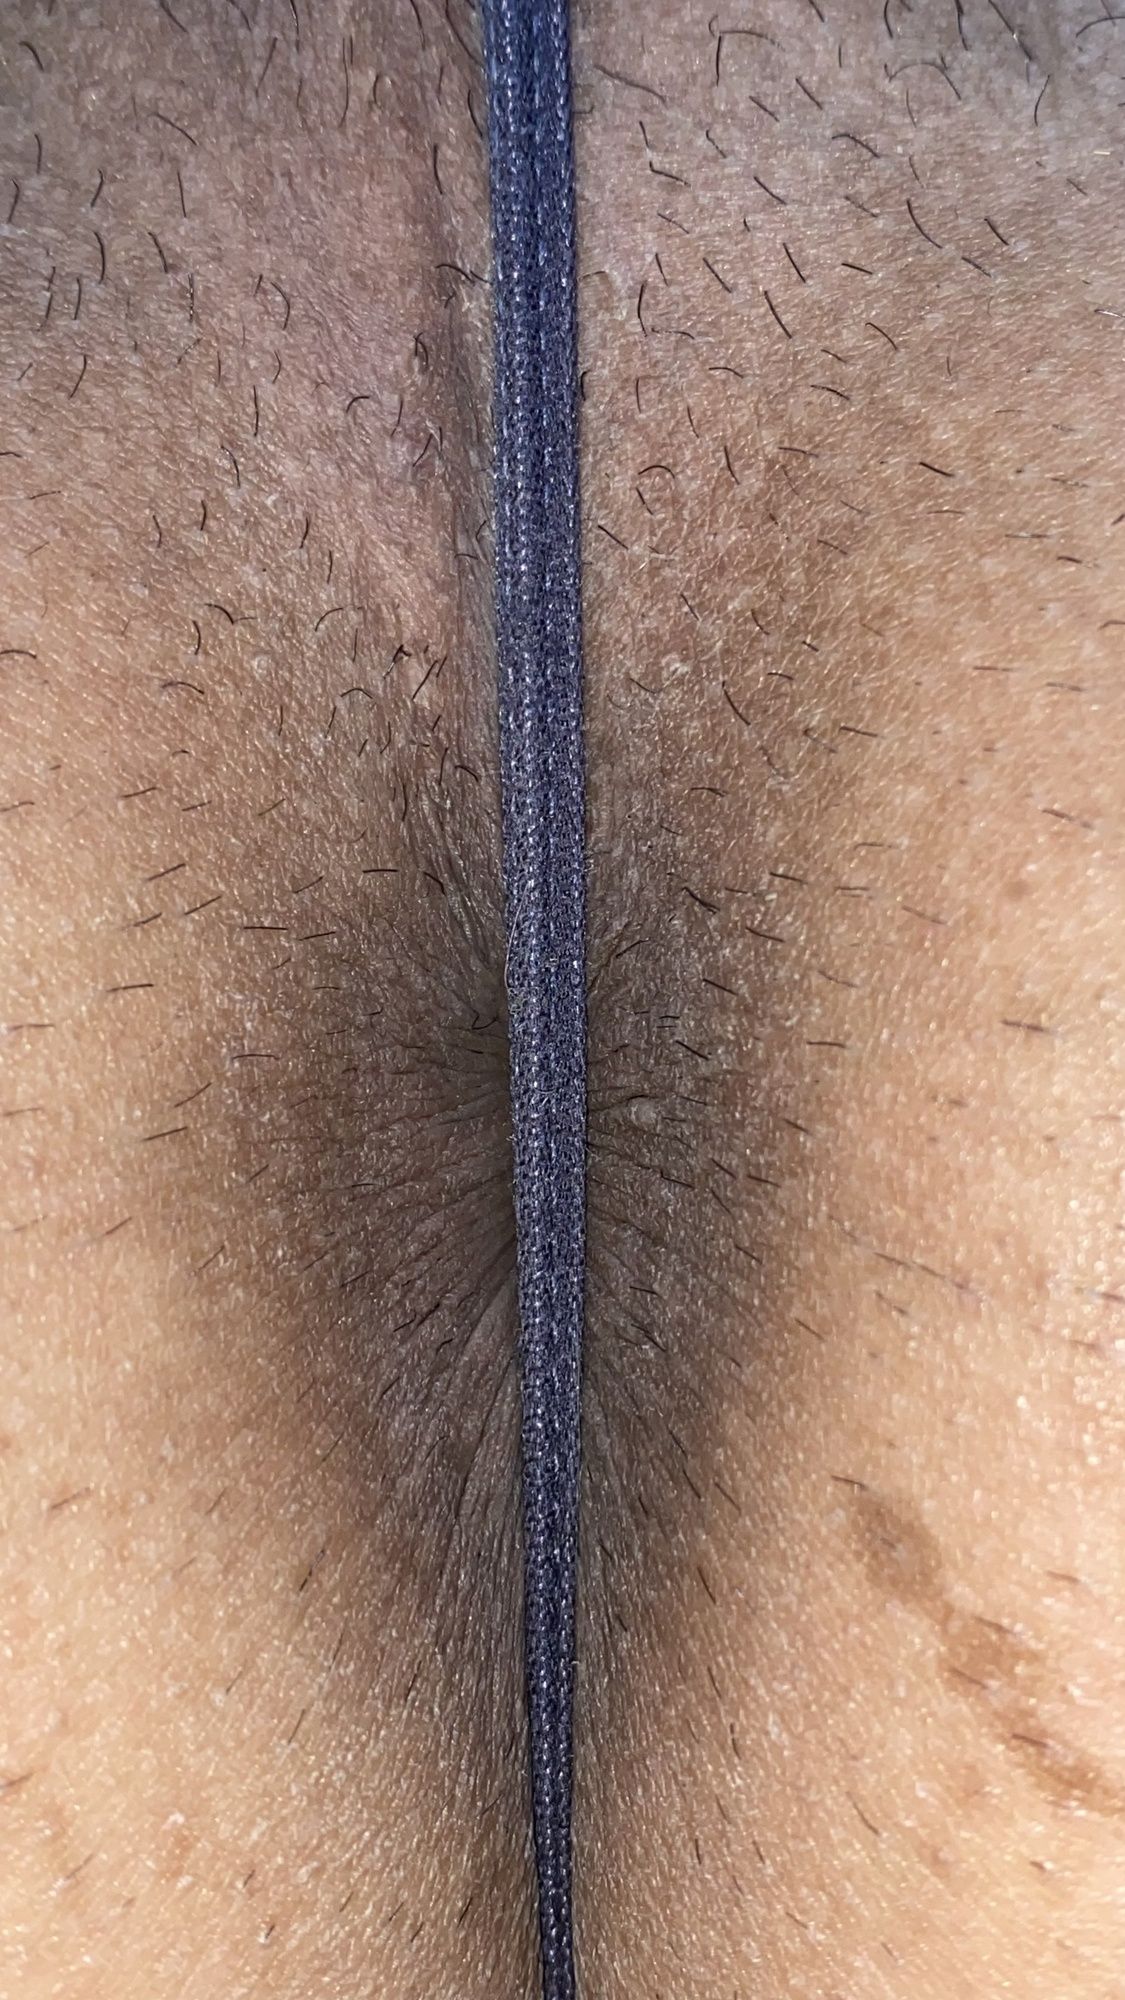 Underwear and buttocks, anus #19